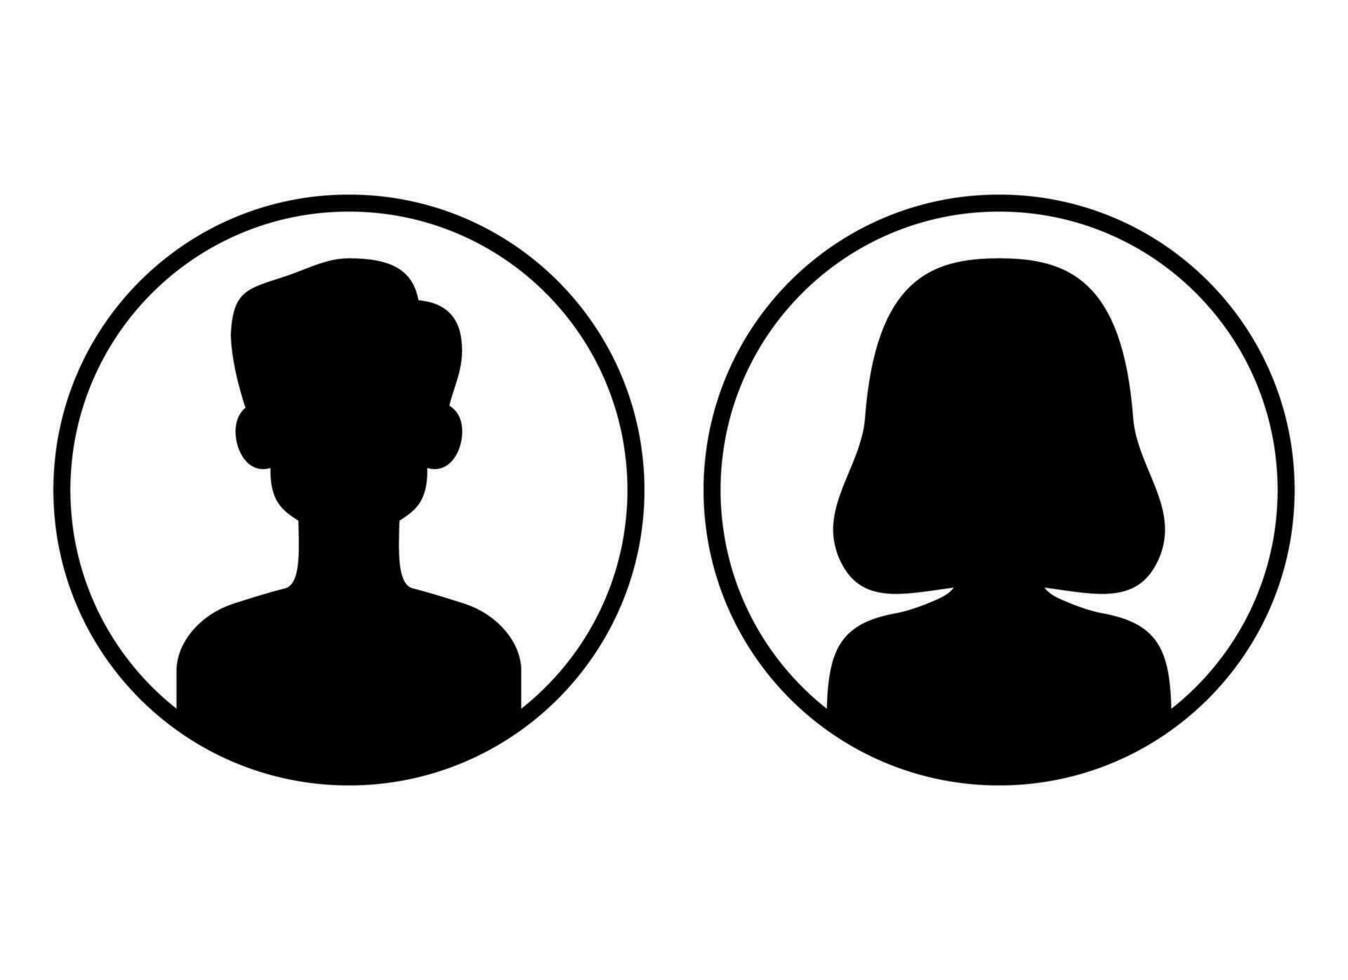 uomo e donna avatar icona. maschio e femmina viso sagome. servendo come avatar o profili per sconosciuto o anonimo individui. sociale Rete vettore illustrazione